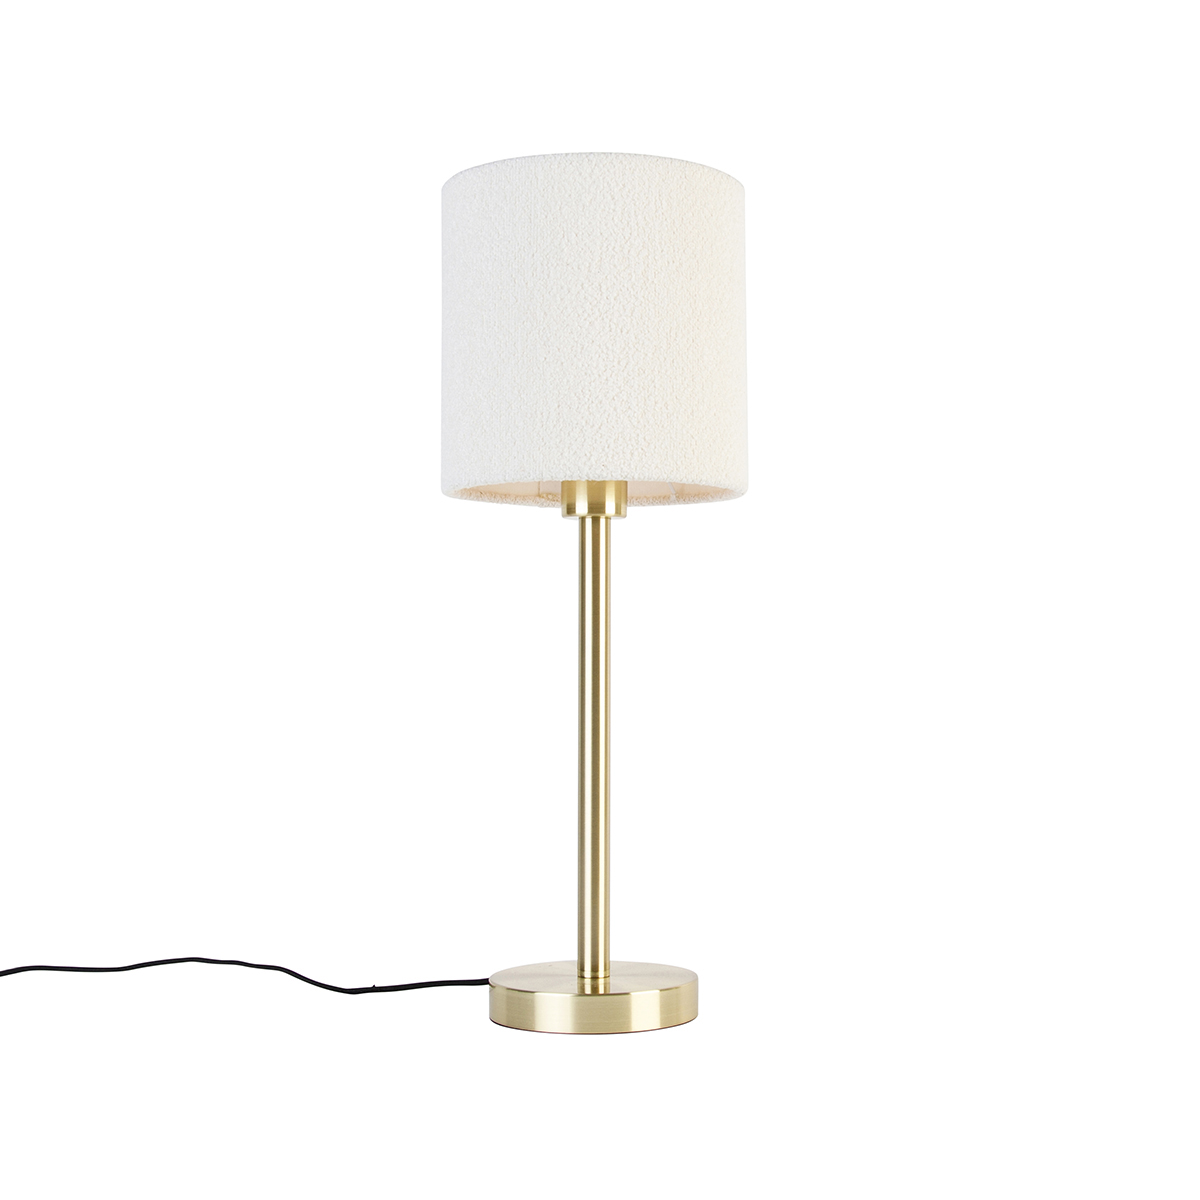 Klasszikus sárgaréz asztali lámpa búra fehér 20 cm - Simplo